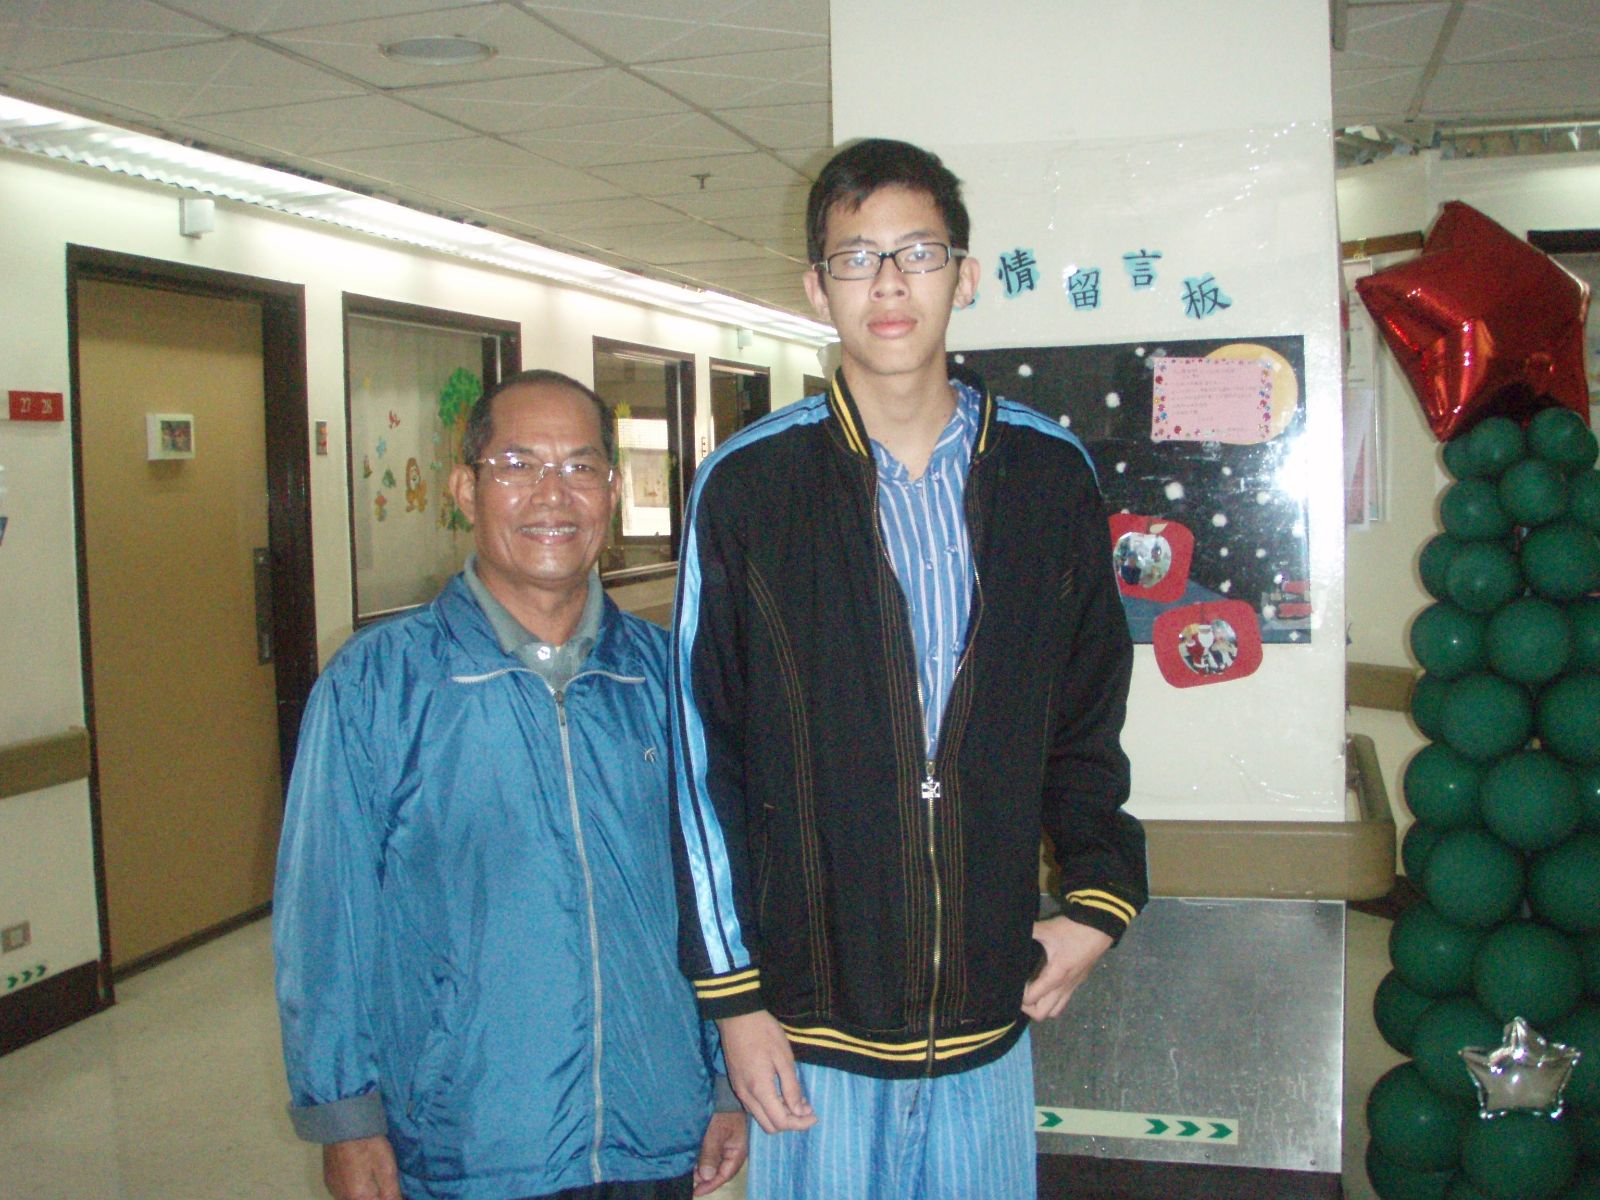 59歲肝癌男性病患李先生(圖左)與16歲男童(圖右)一同合影留念